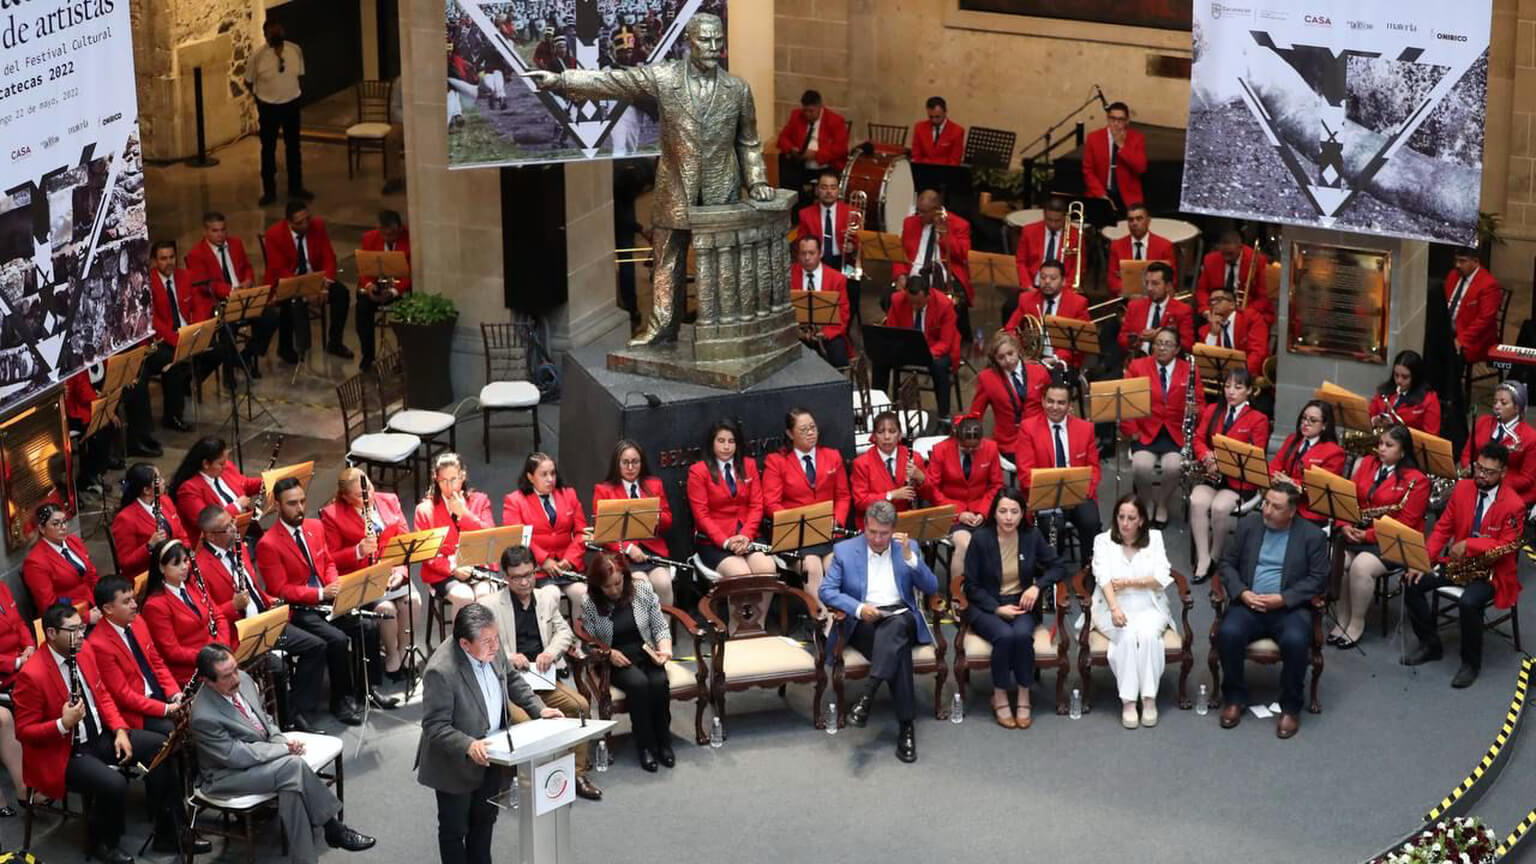 Destaca la actuación de la Banda Sinfónica del Estado de Zacatecas y el grupo universitario Qu Jazz